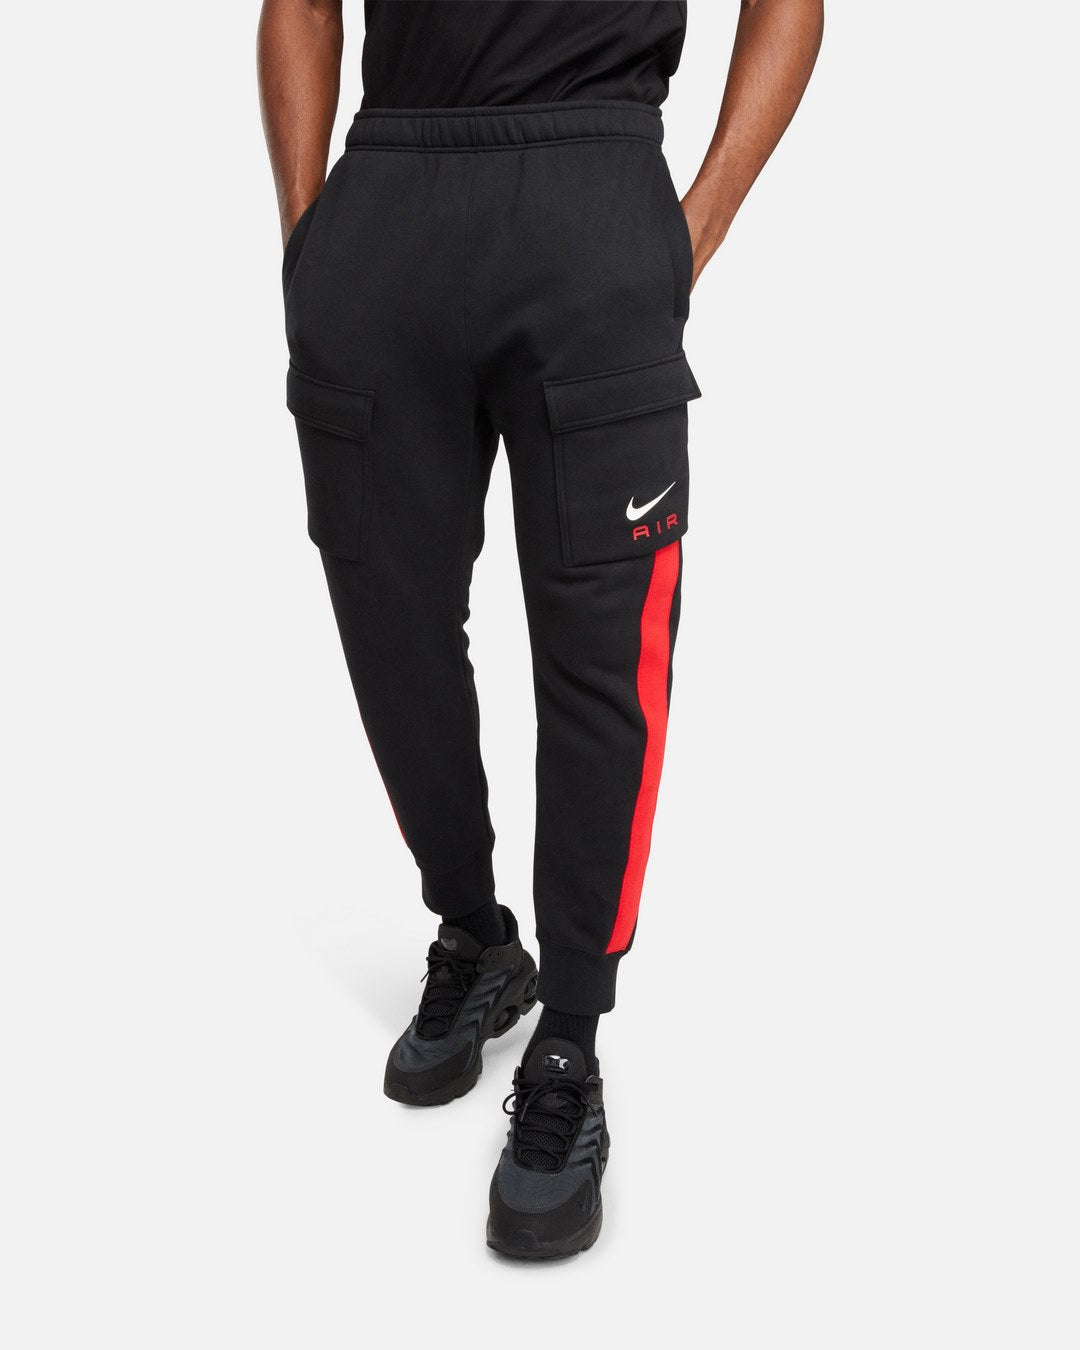 Nike Air Pants - Black/Red